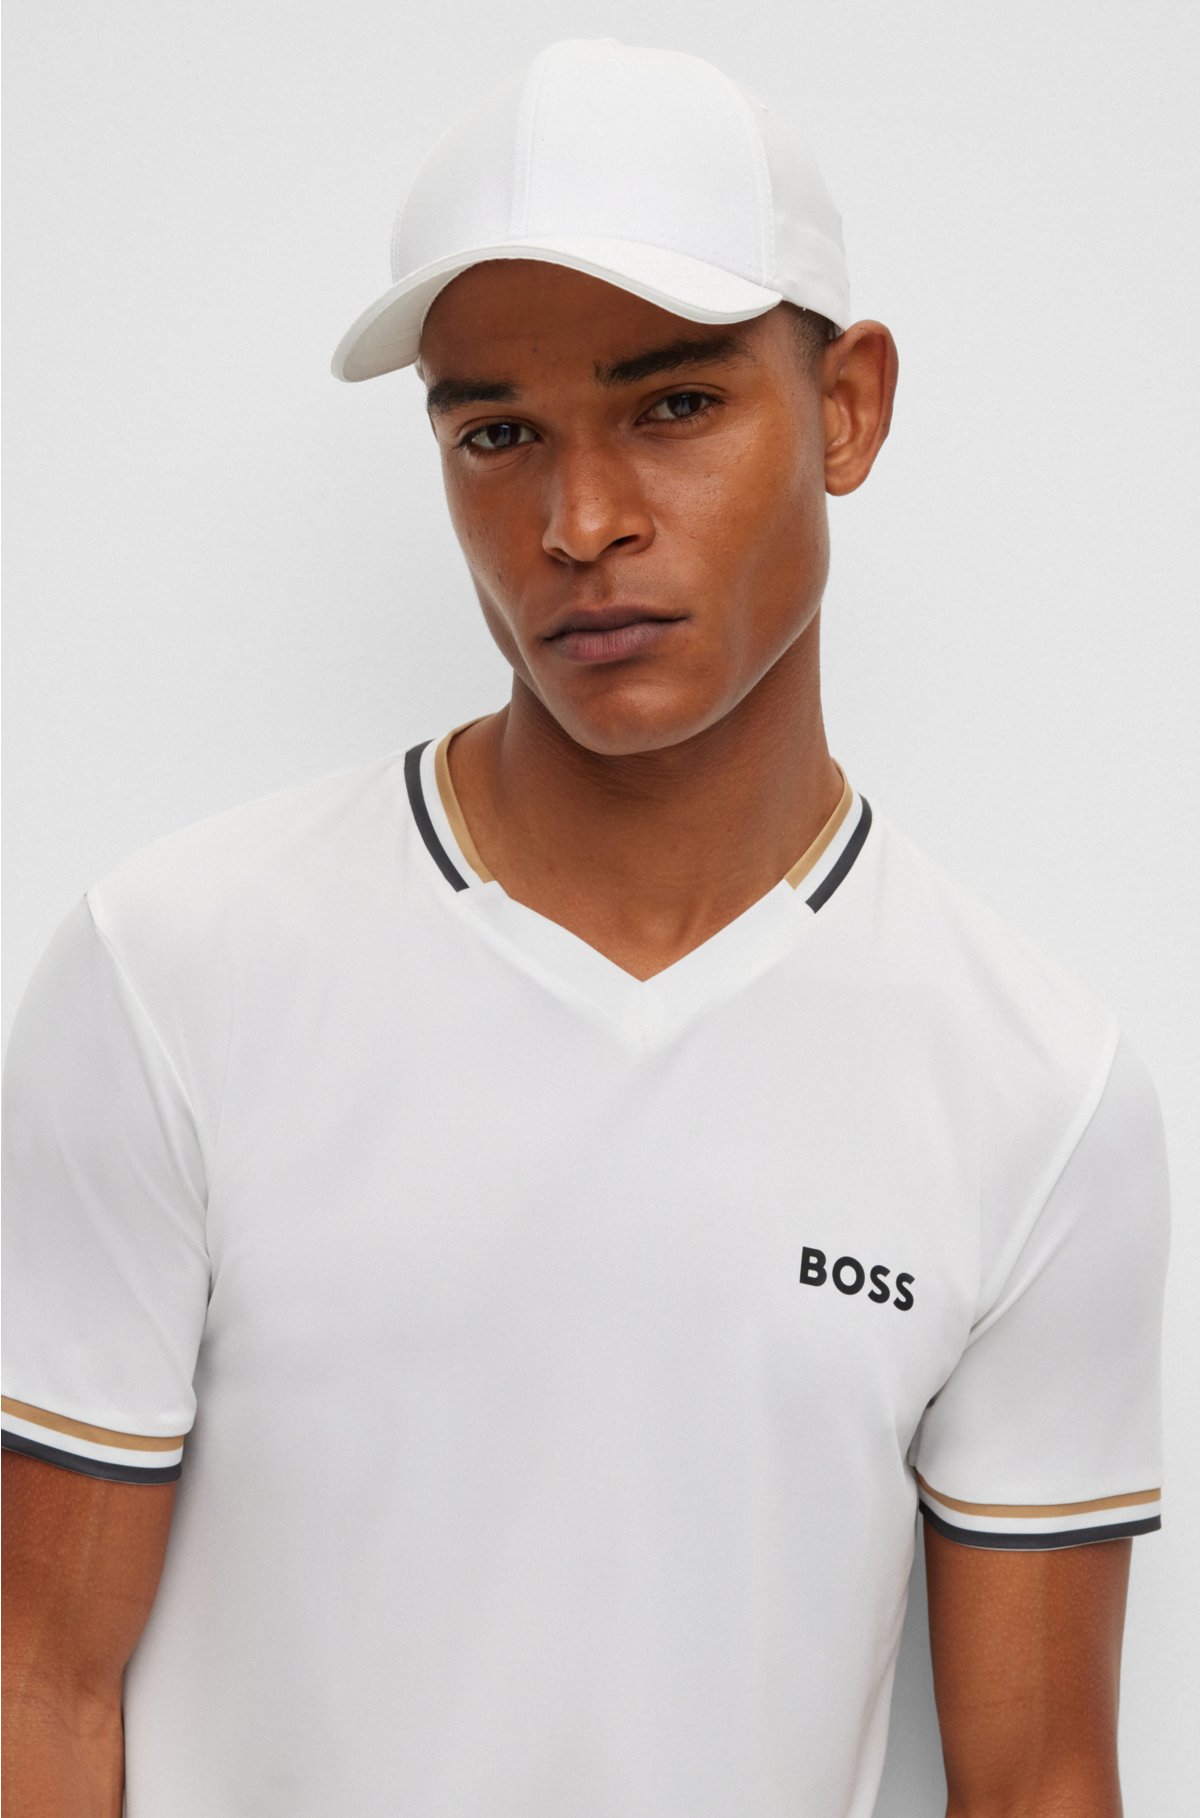 BOSS - BOSS x Matteo Berrettini スリムフィットTシャツ シグネチャー